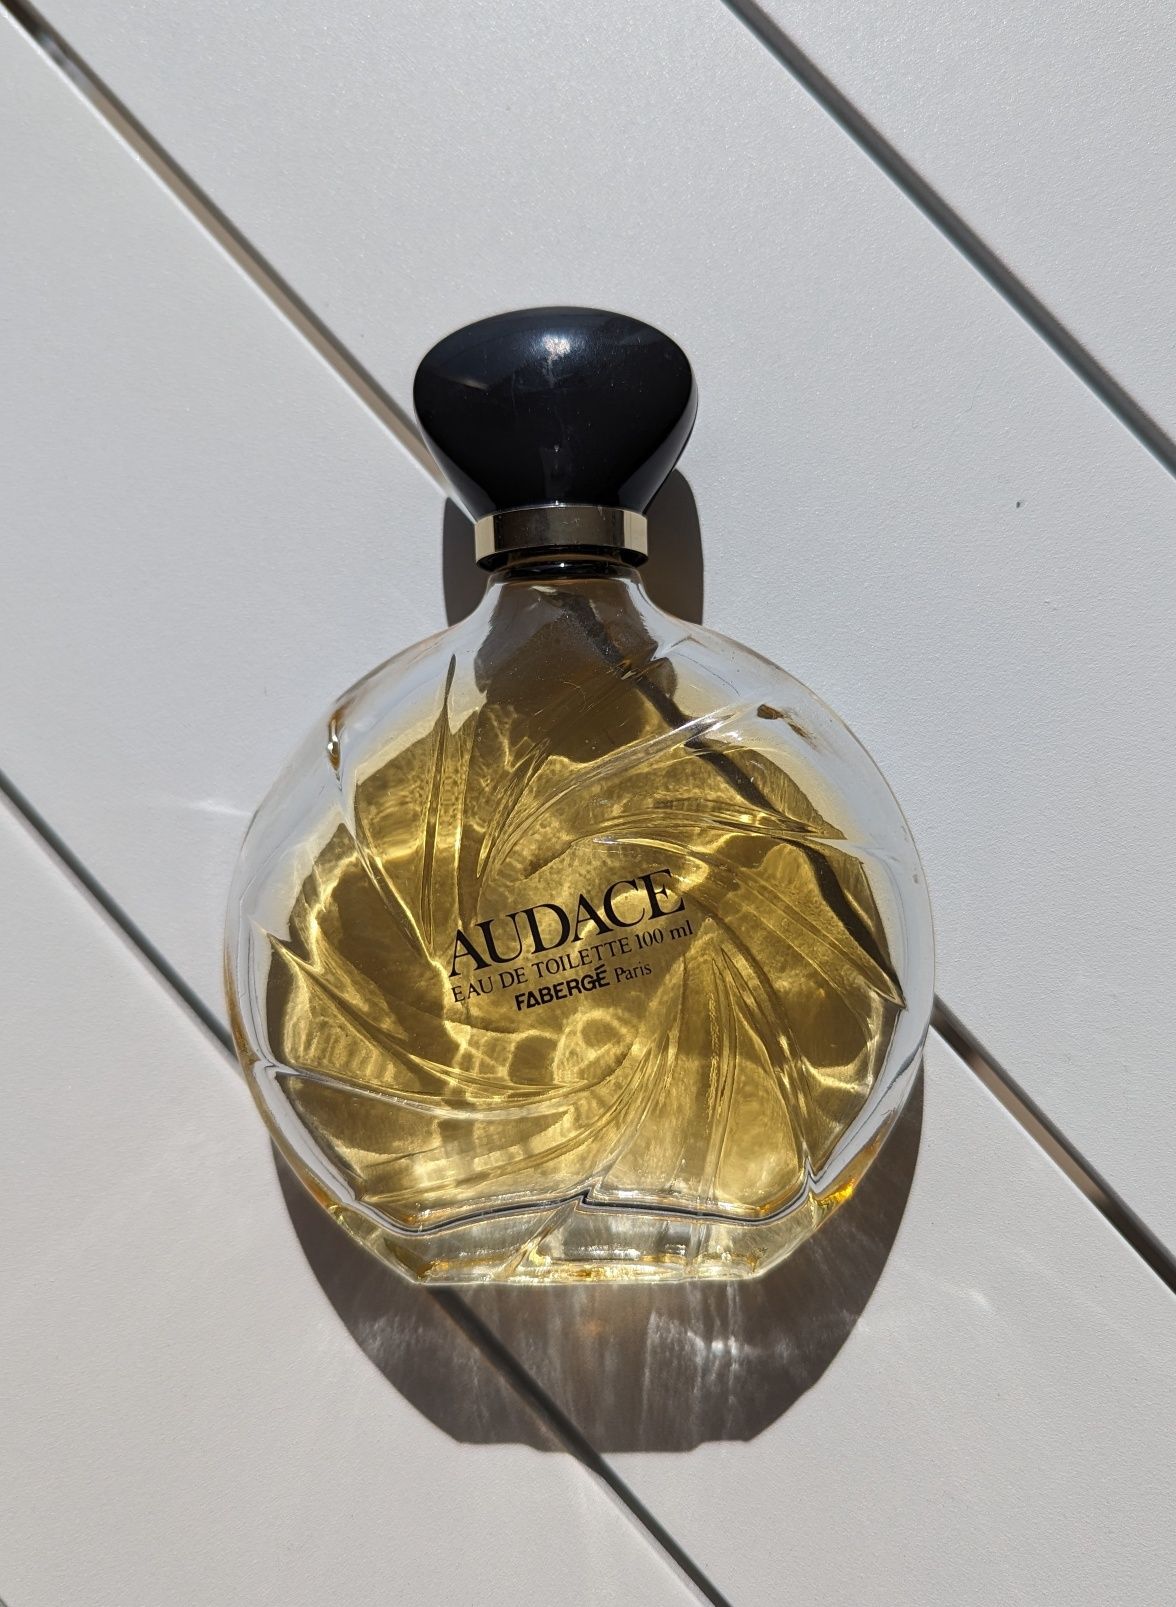 Audace Faberge Brut Paris perfume vintage